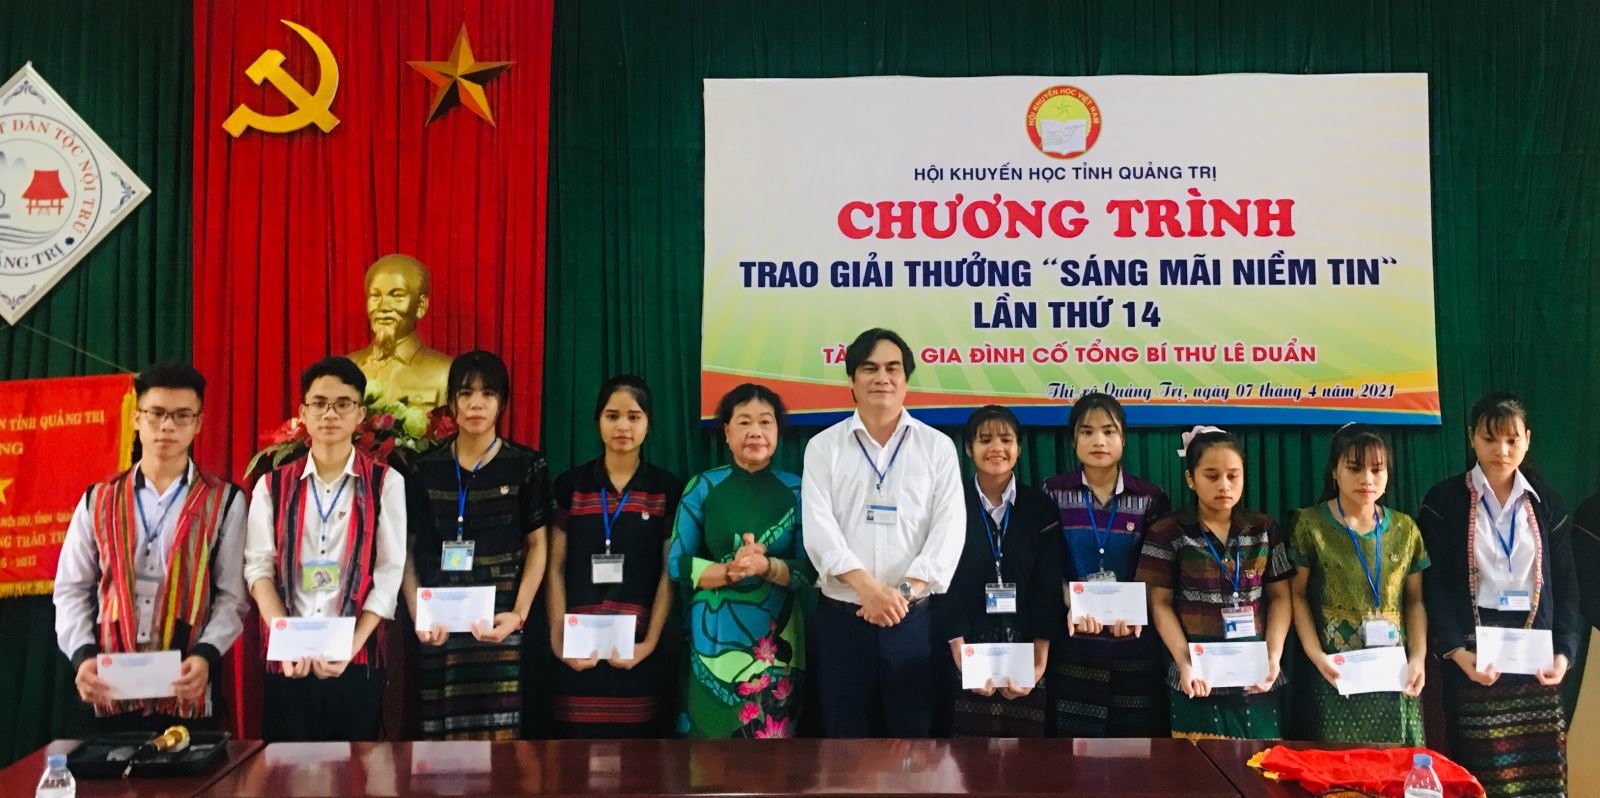 Trao học bổng “sáng mãi niềm tin” cho các em học sinh trường PTDT Nội trú tỉnh, thị xã Quảng Trị